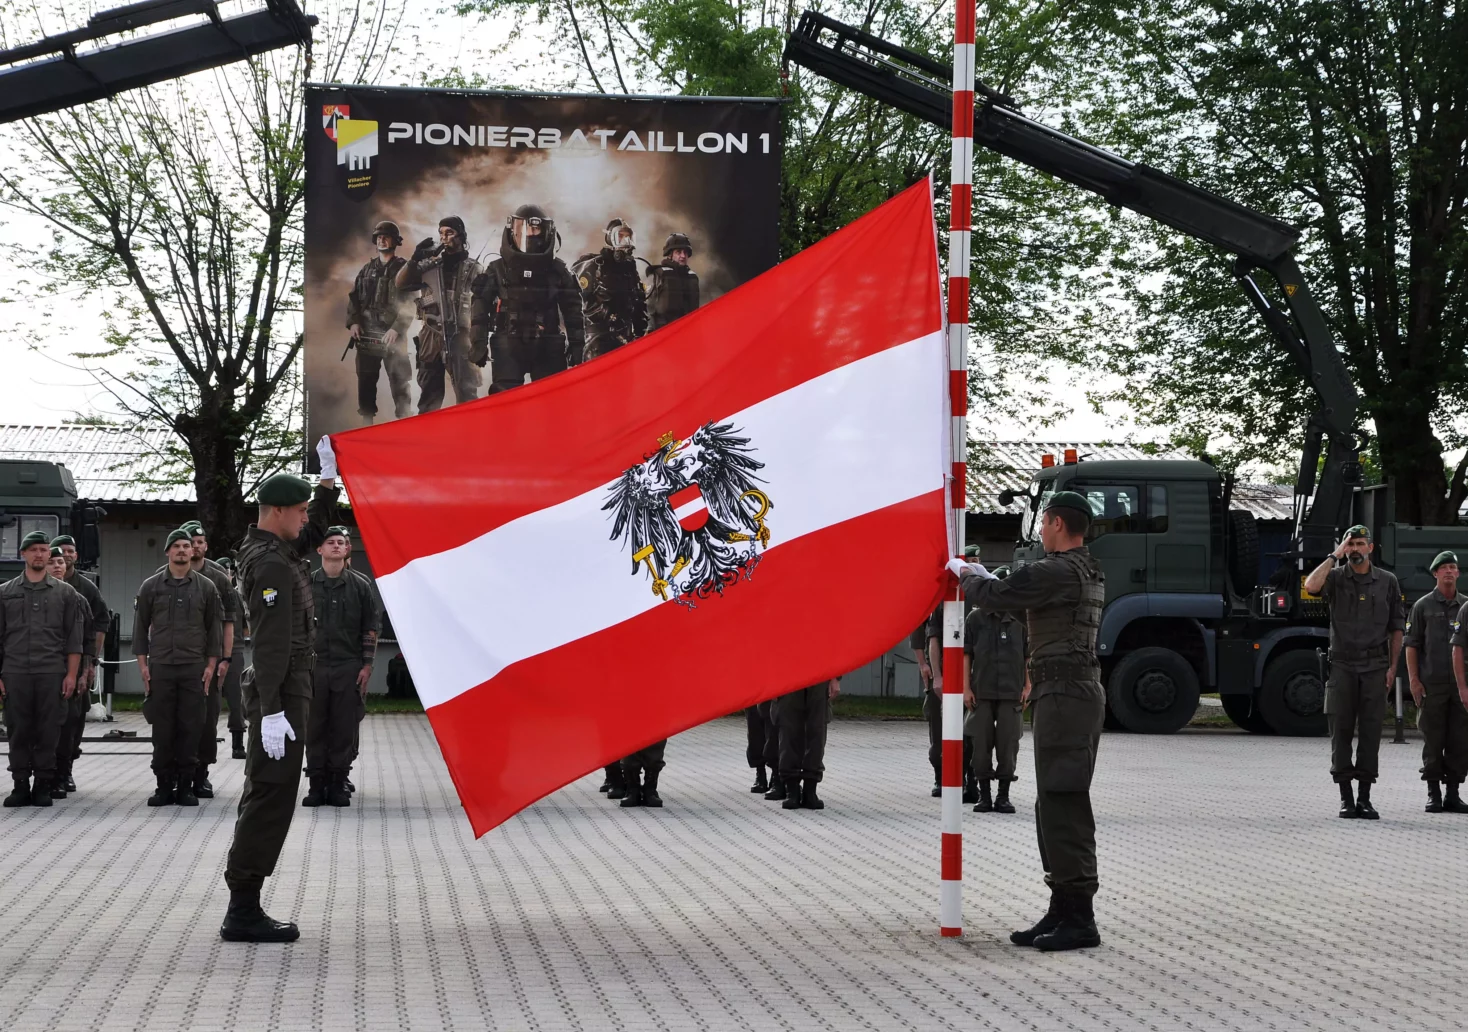 Ein Bild auf 5min.at zeigt mehrere Villacher Pioniere, welche die österreichische Flagge in den Händen halten.